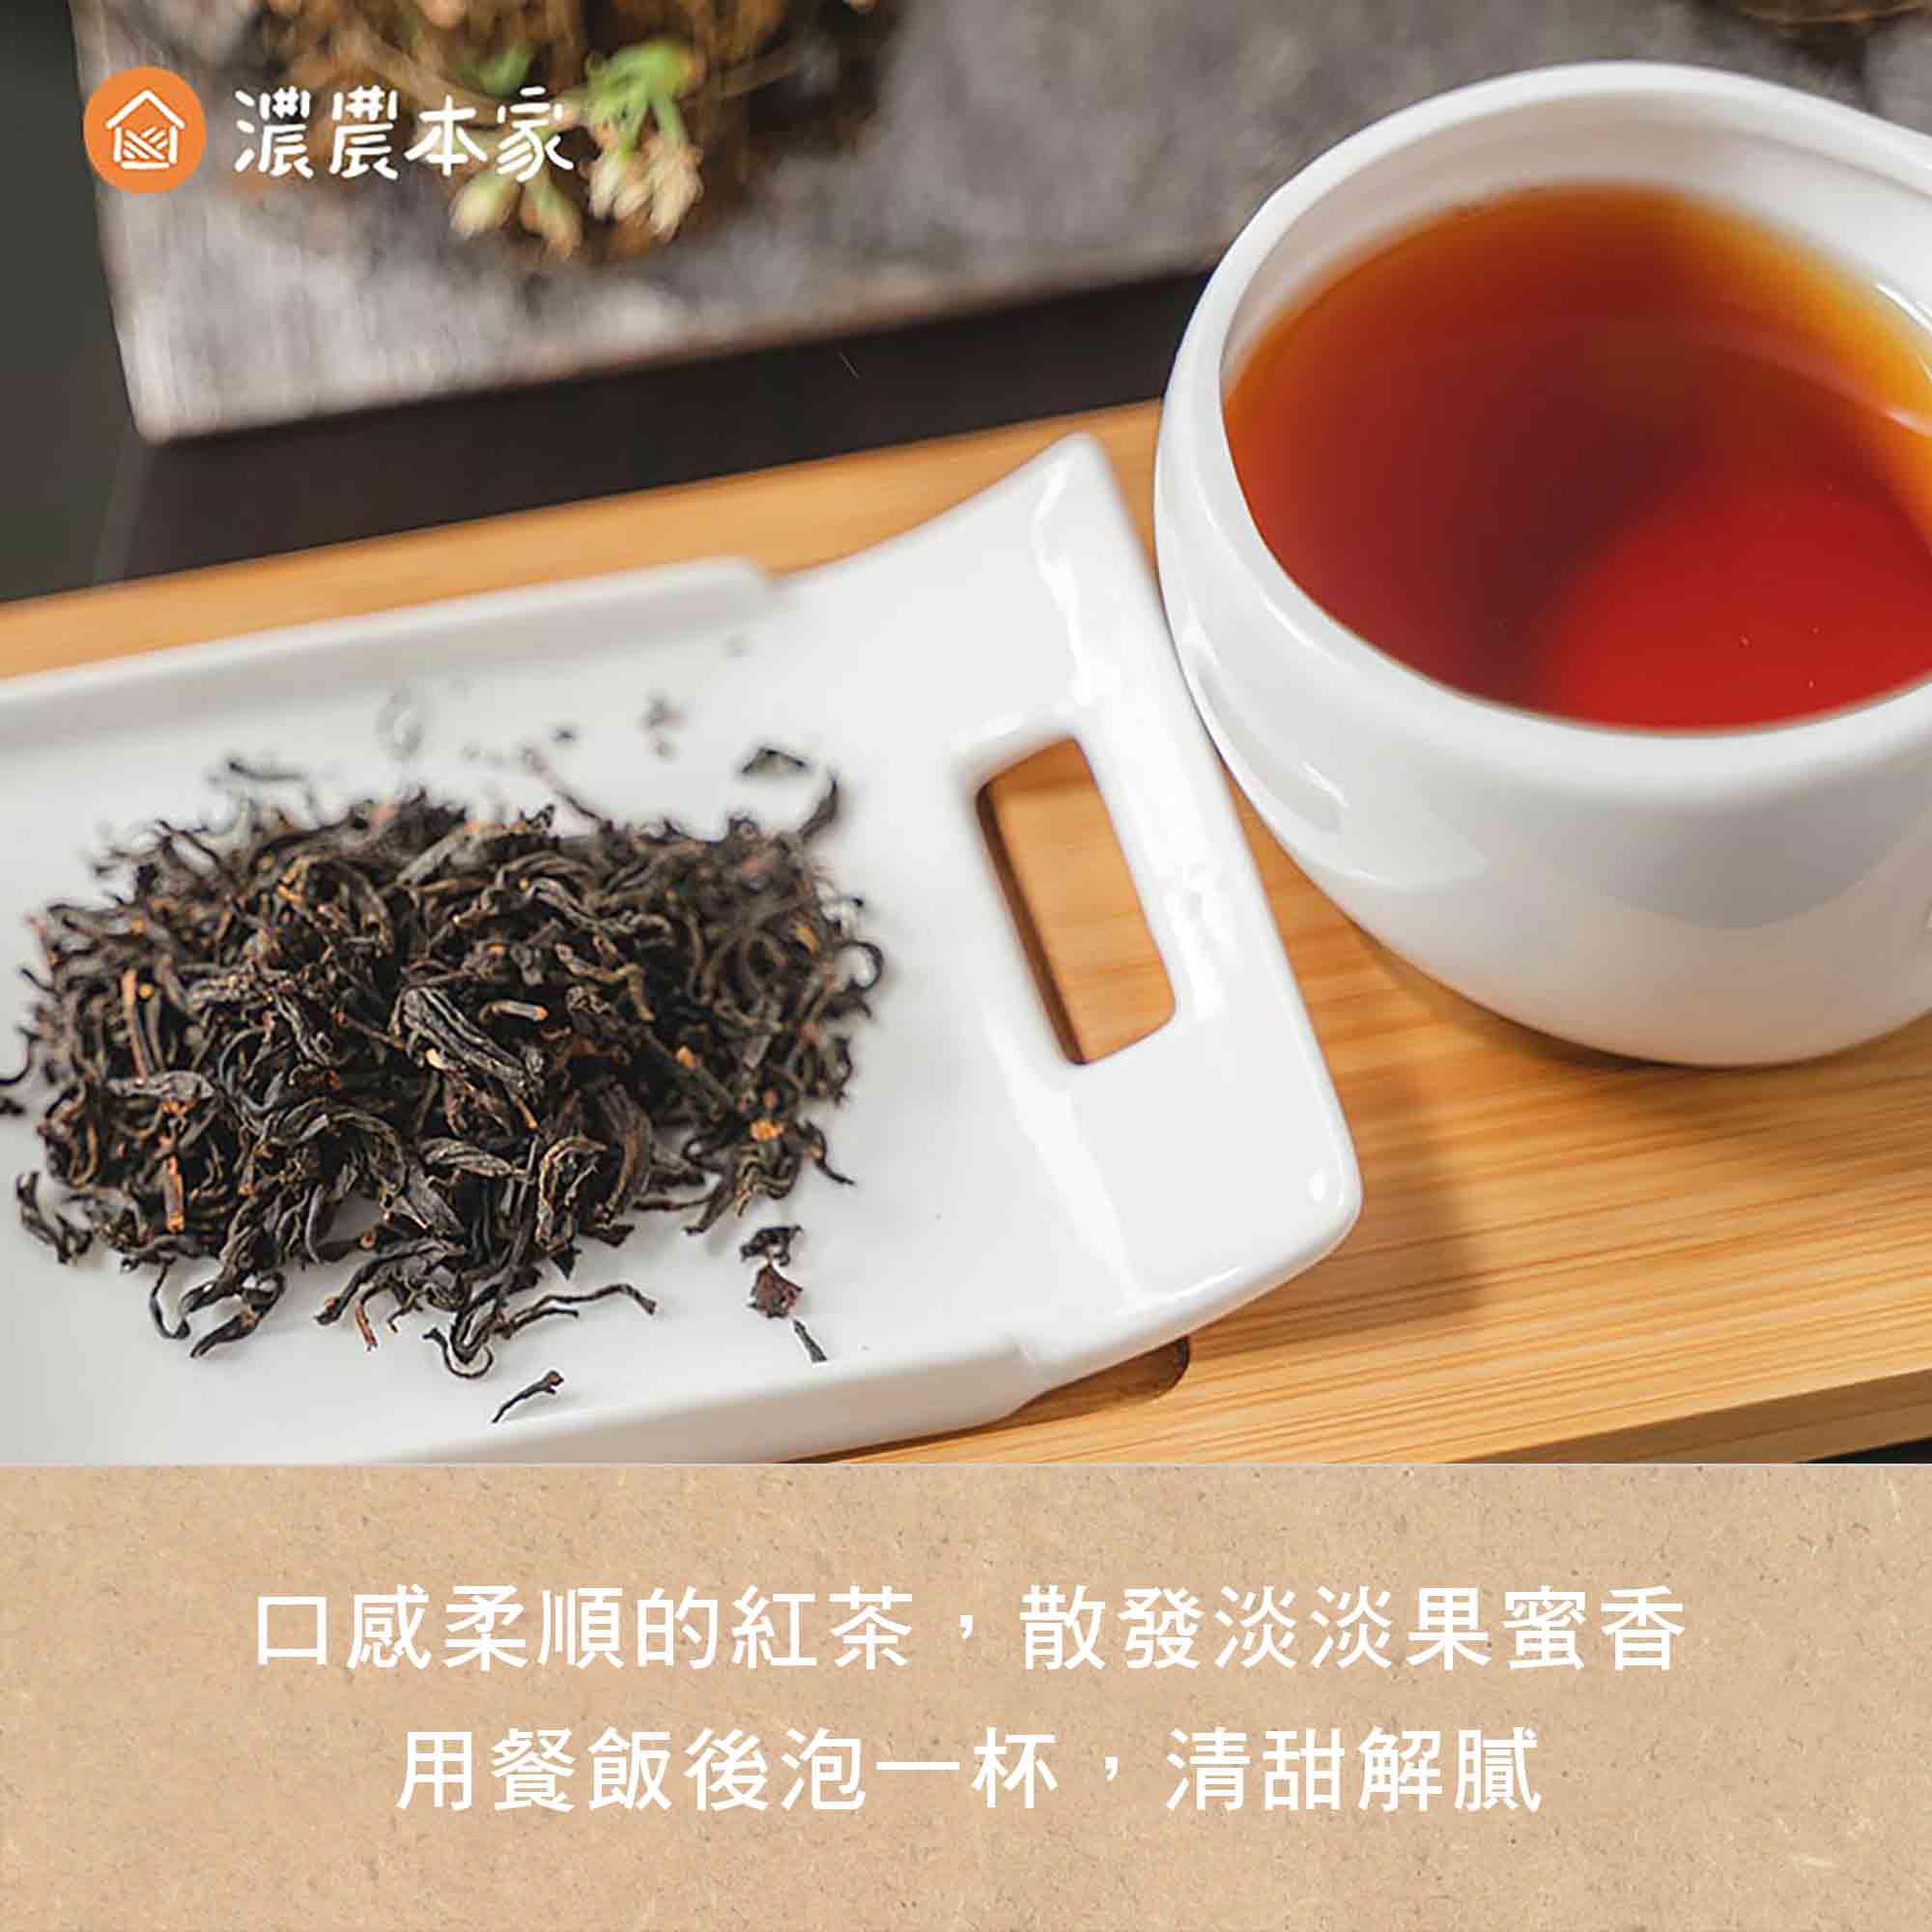 台灣經典特色好吃零食推薦人氣蜜香紅茶